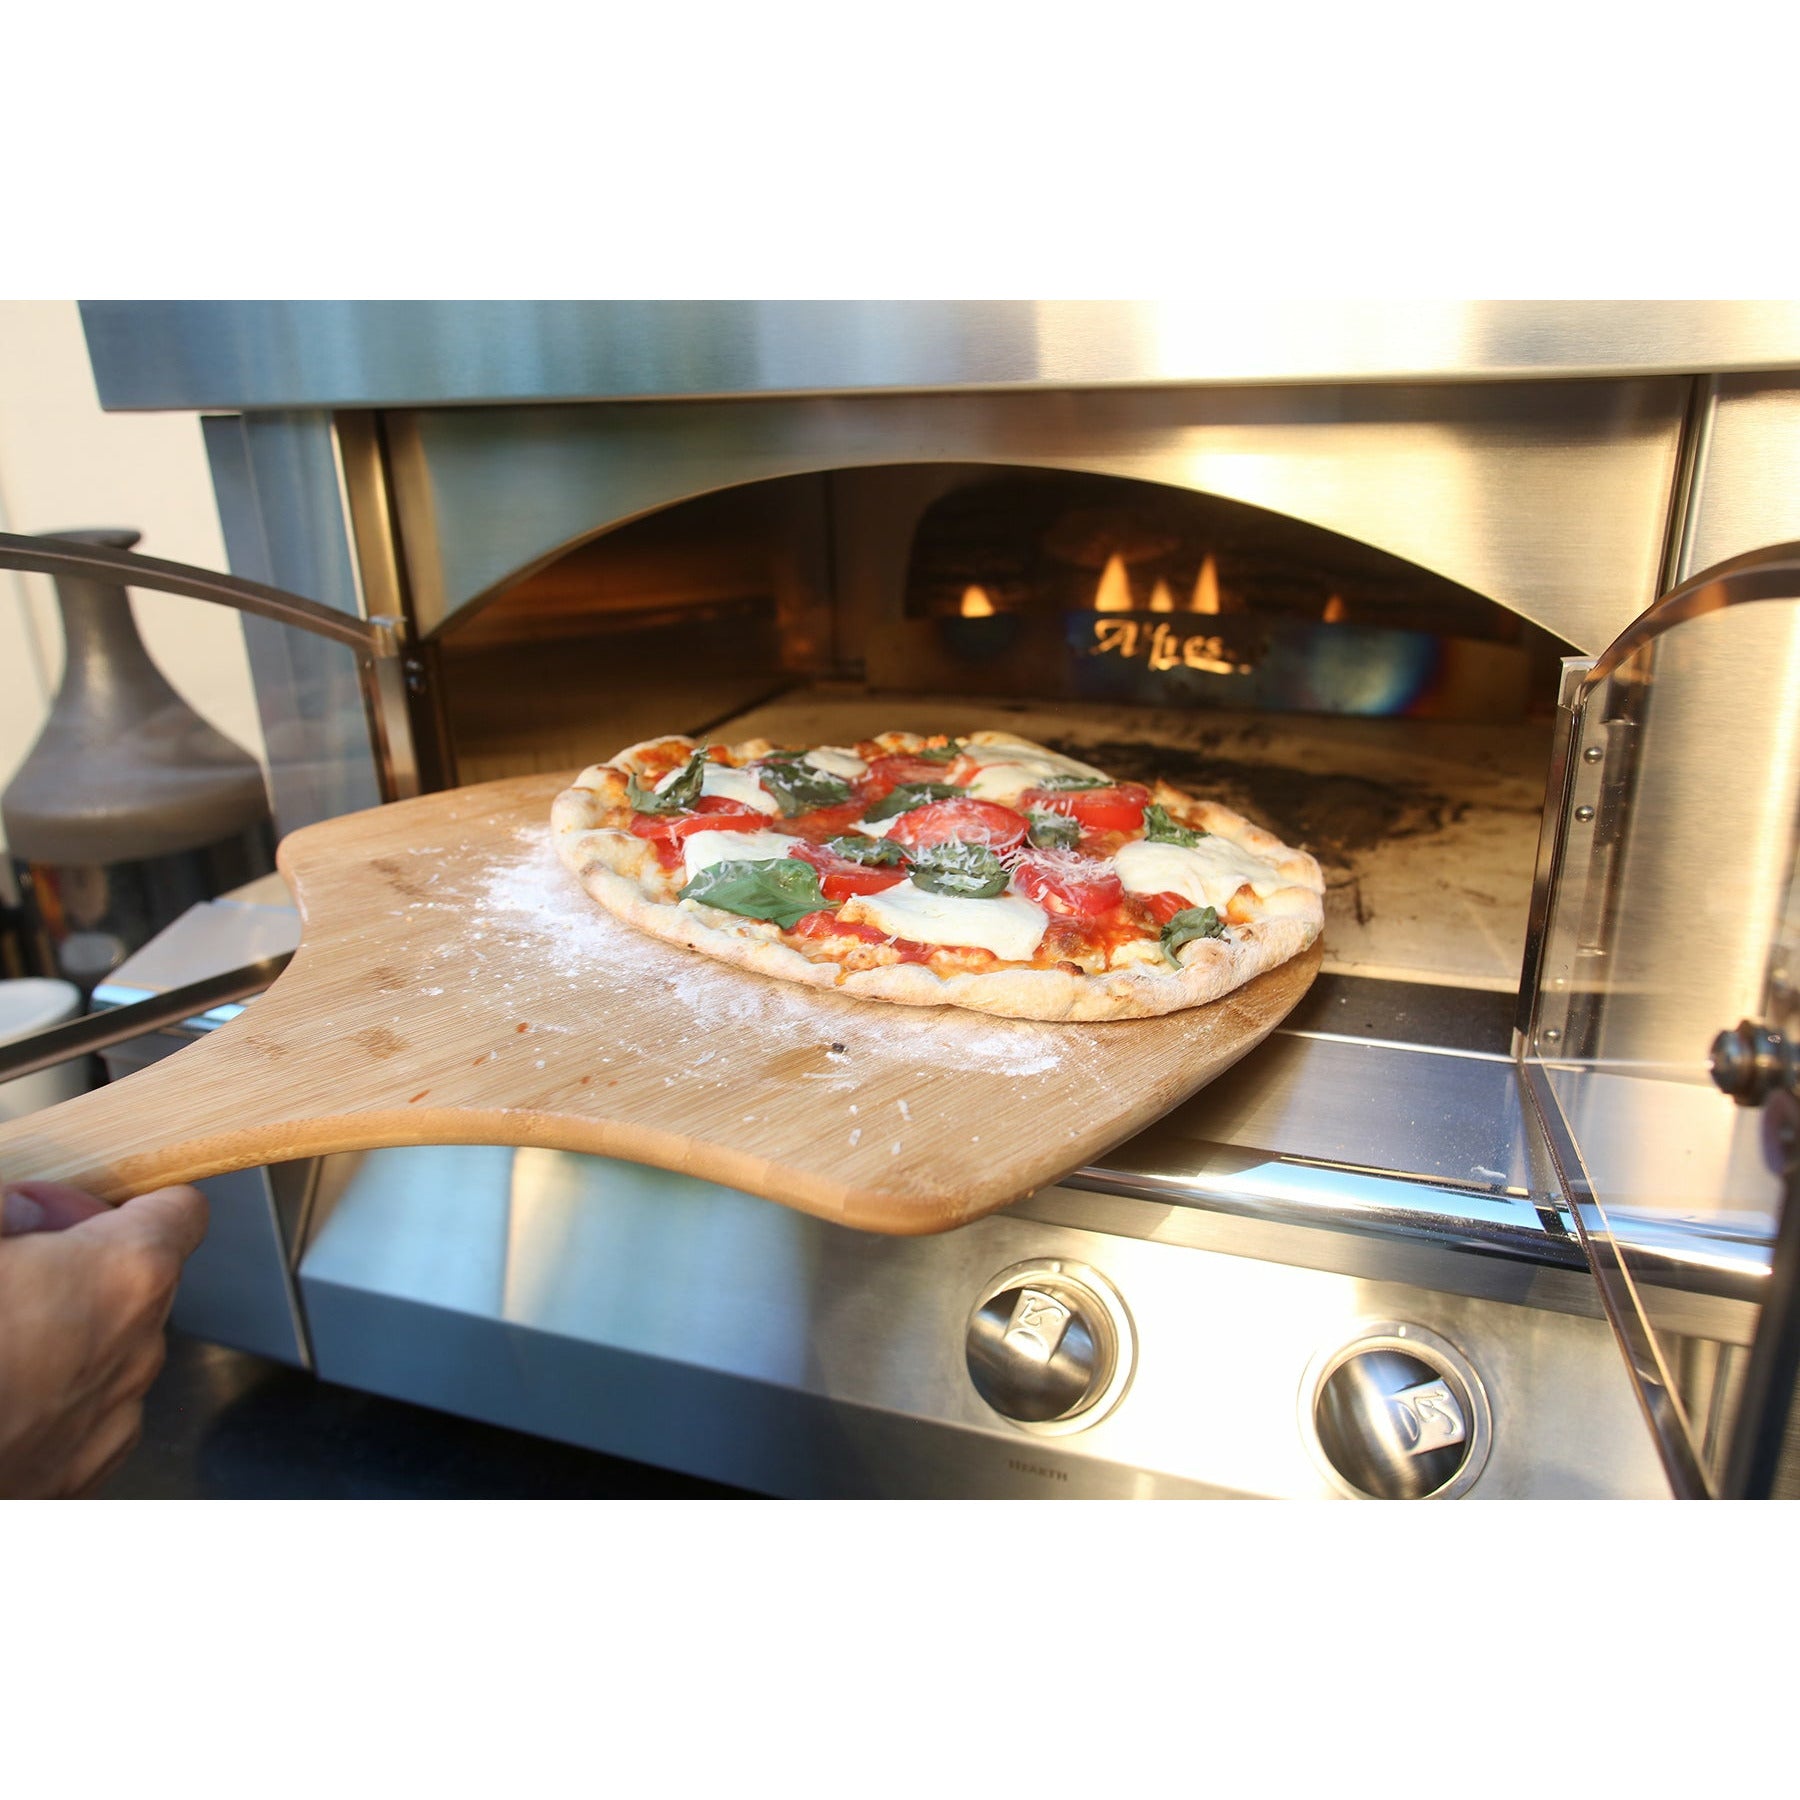 Alfresco Pizza Oven Plus Built-In Model